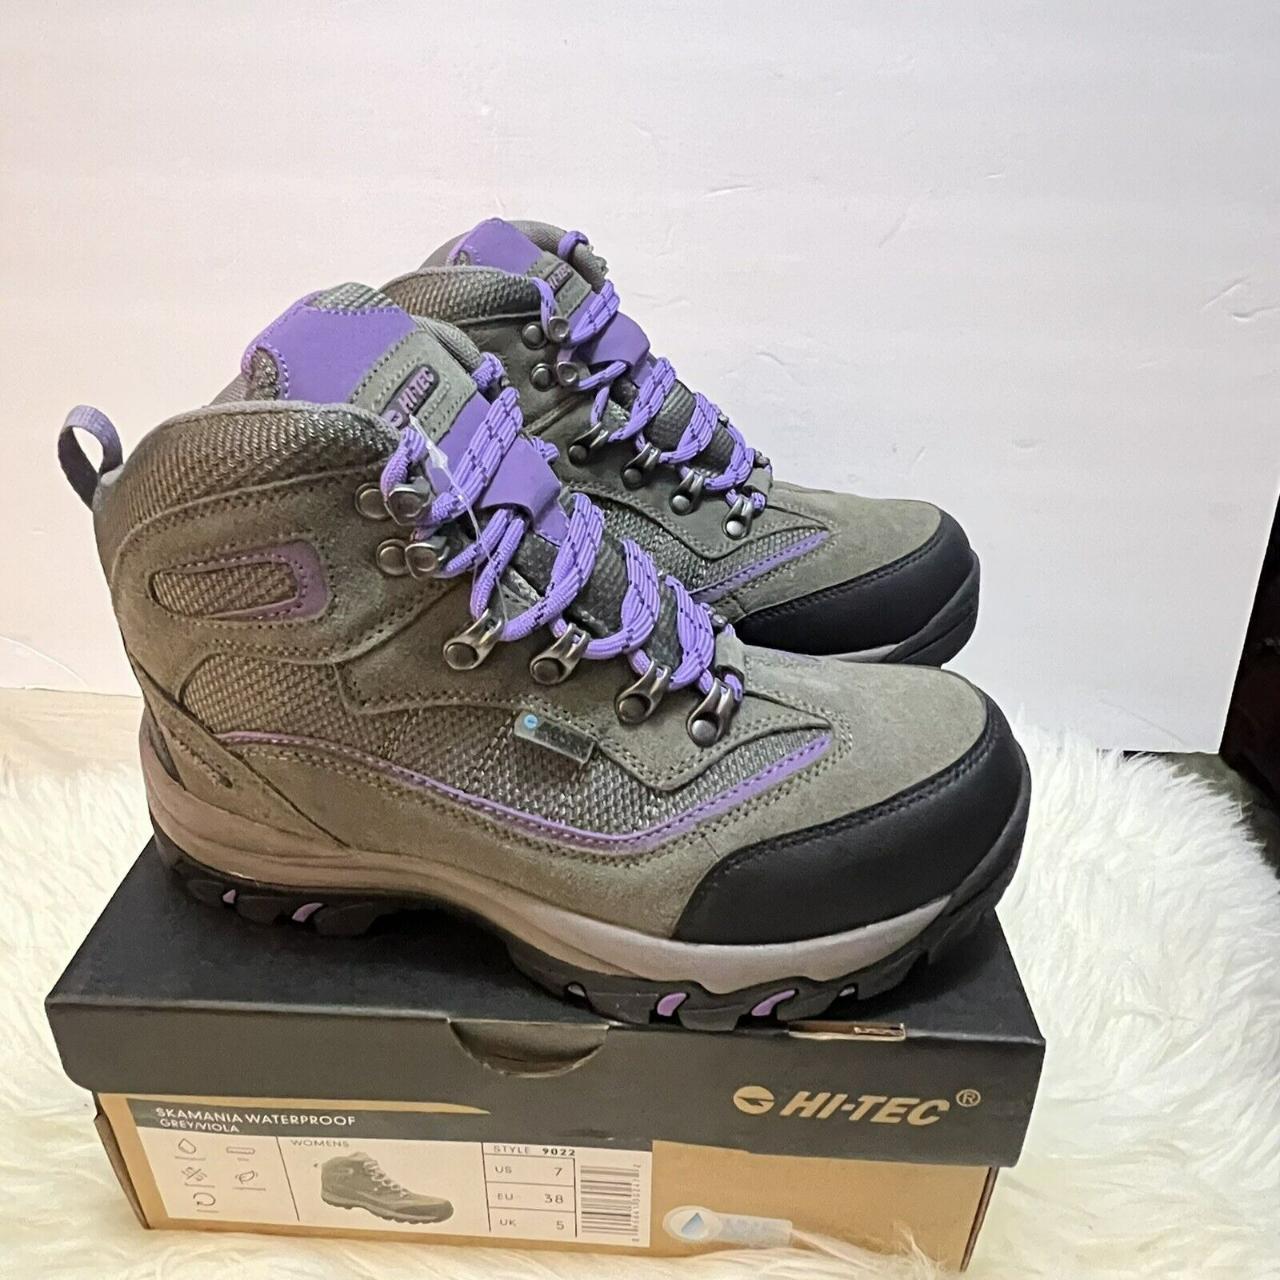 Hi-Tec Men's Grey and Purple Boots